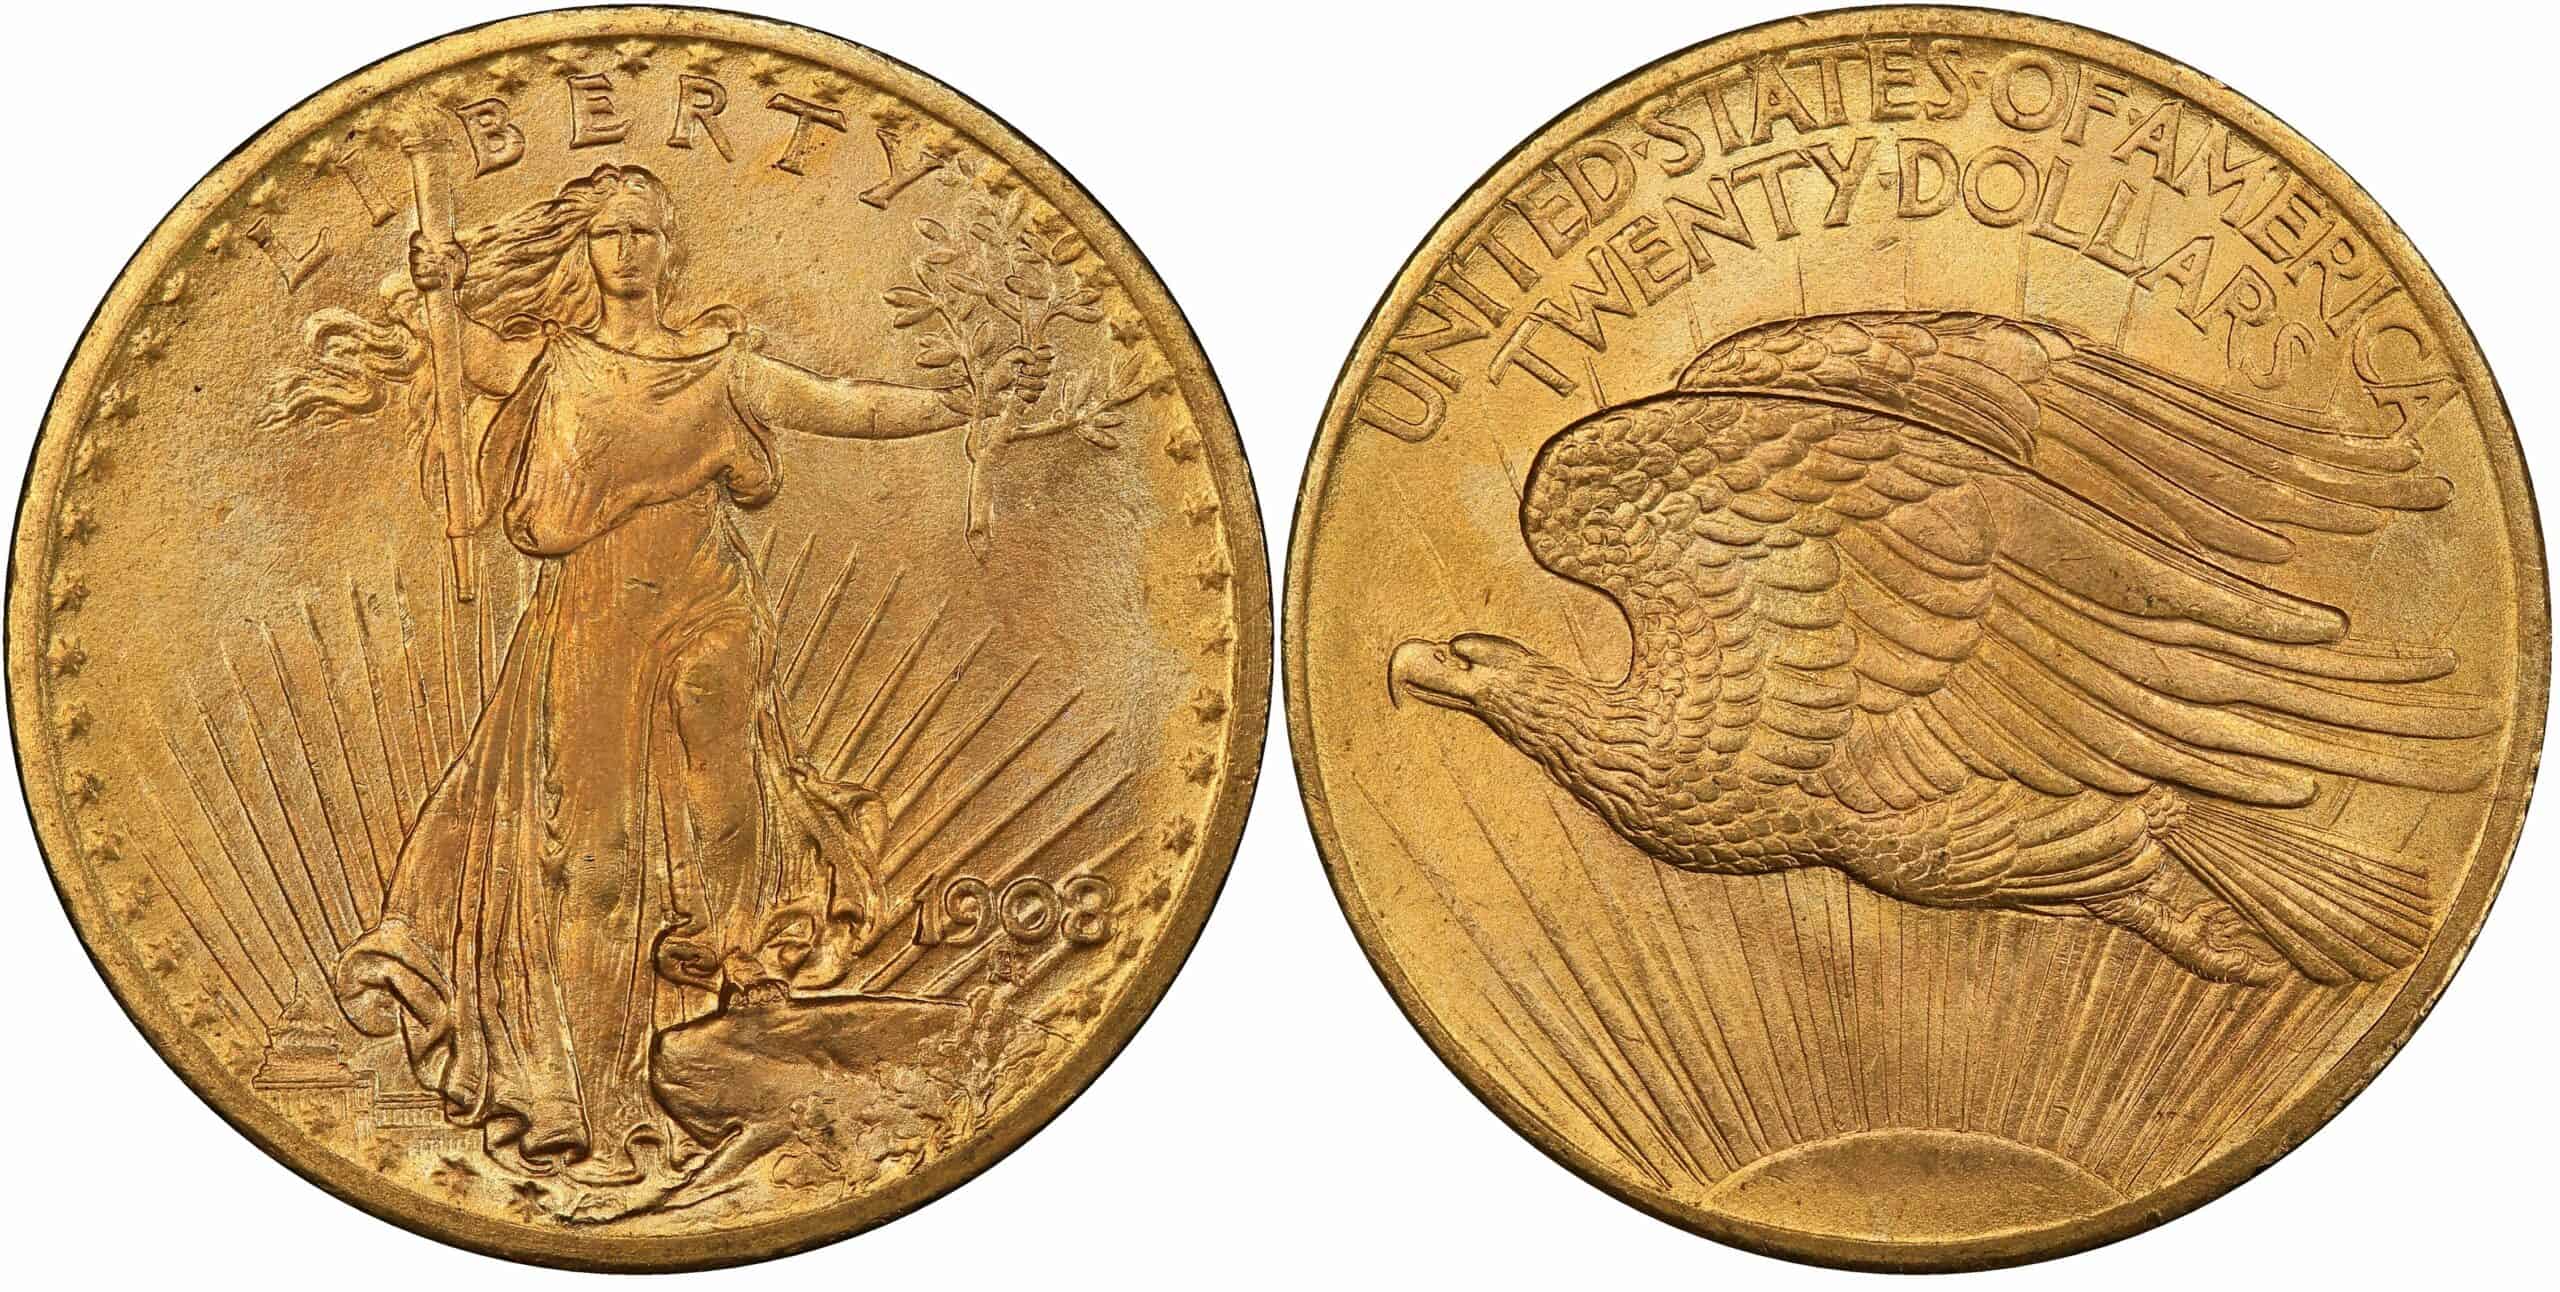 Saint Gaudens No Motto 20 Dollar Gold Coin (1907-1908)